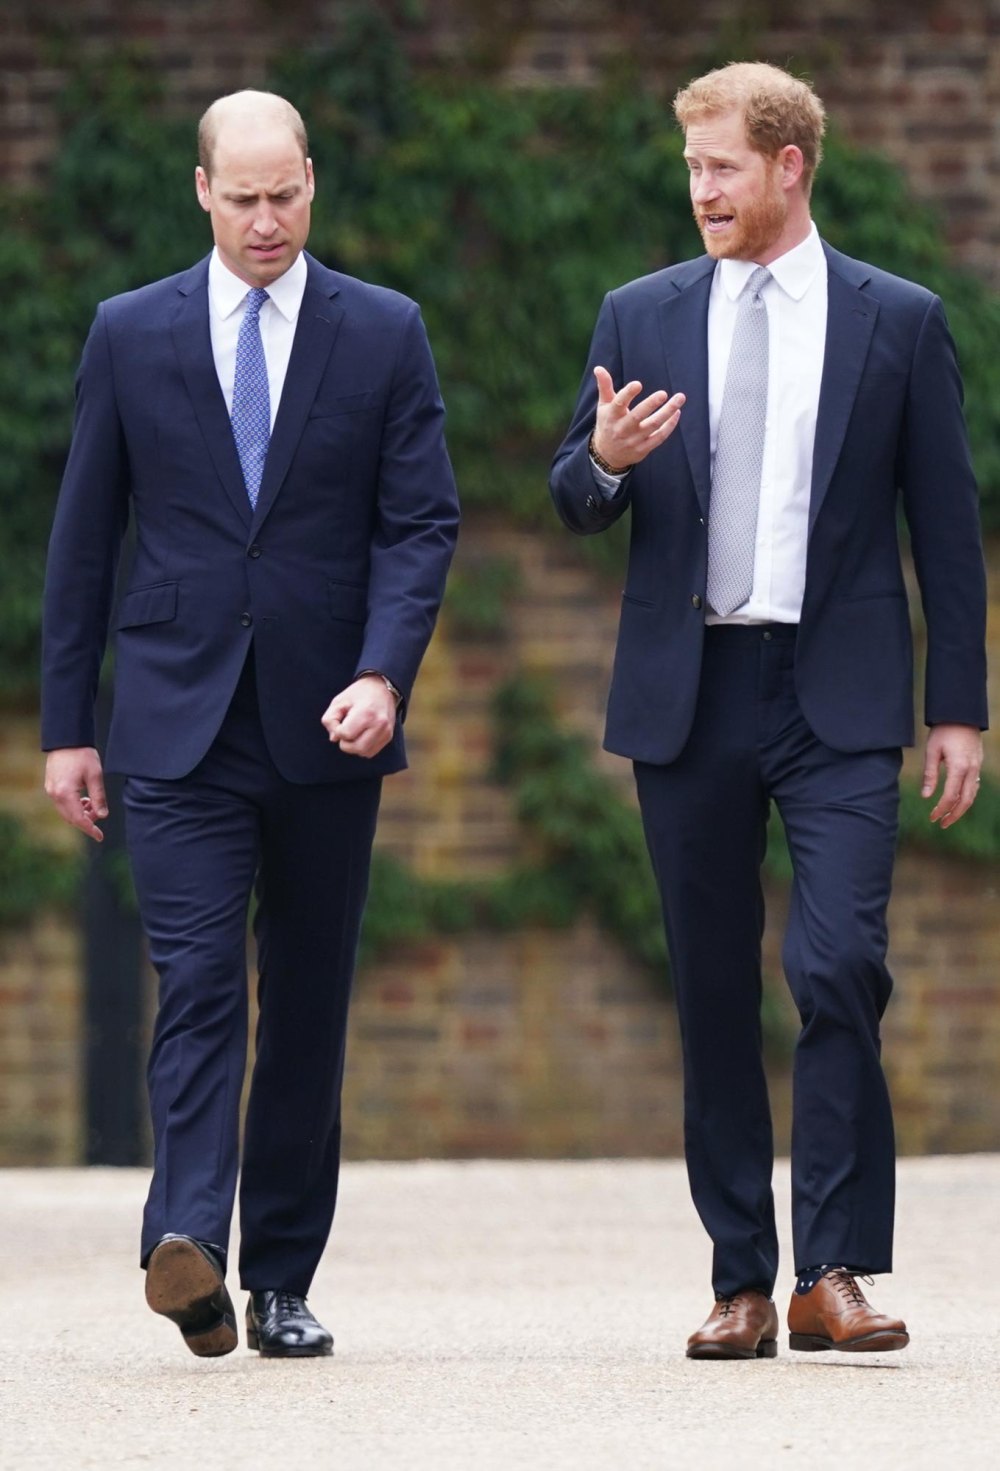 Royal-Experte schlägt vor, dass der Zeitpunkt der Verleihung des neuen Titels an Prinz Williams eine gewaltige Beleidigung für Prinz Harry darstellt